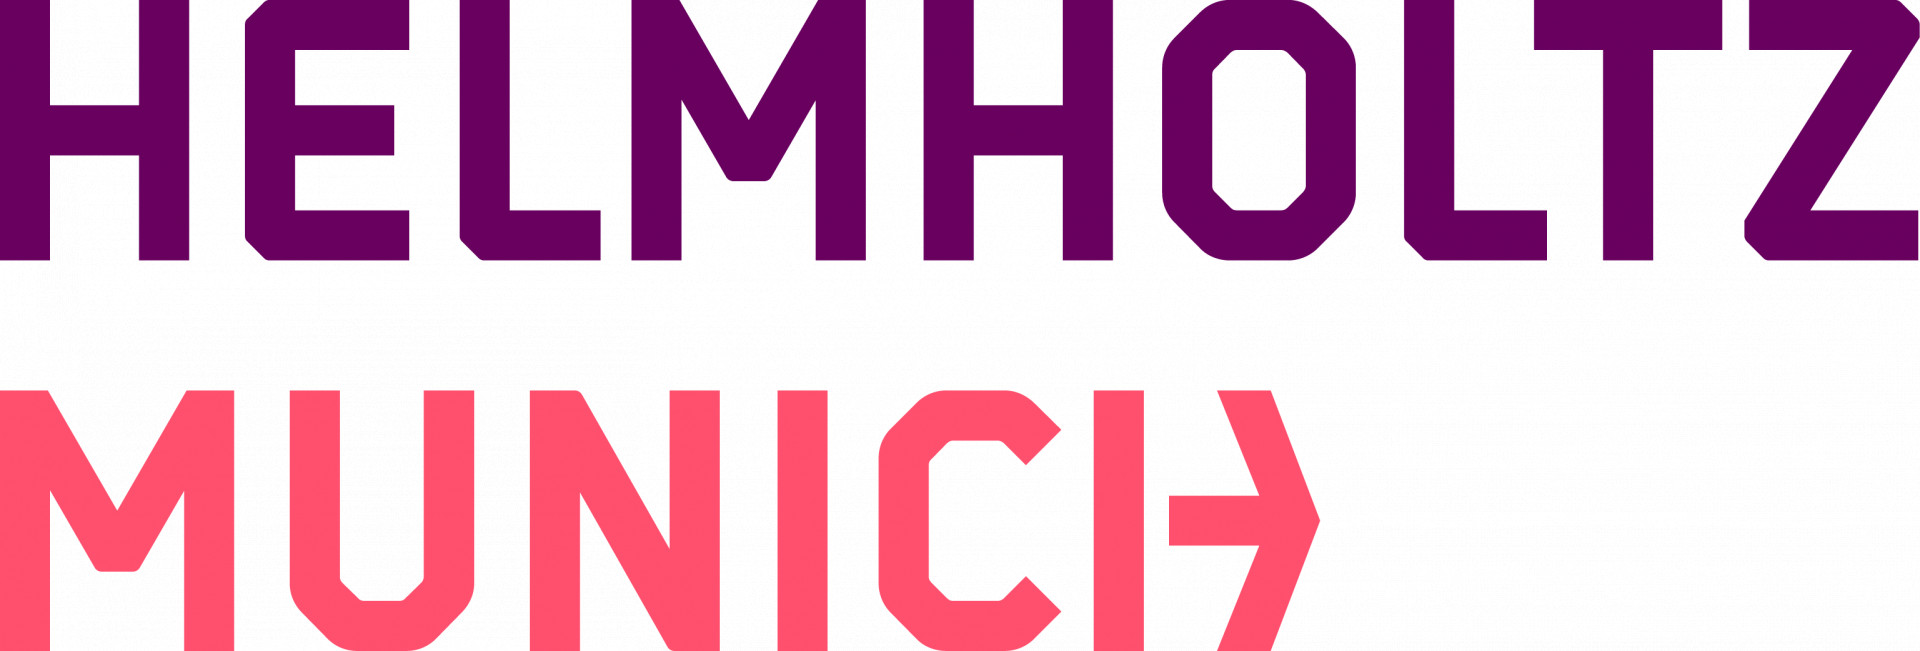 Logo Helmholtz Munich